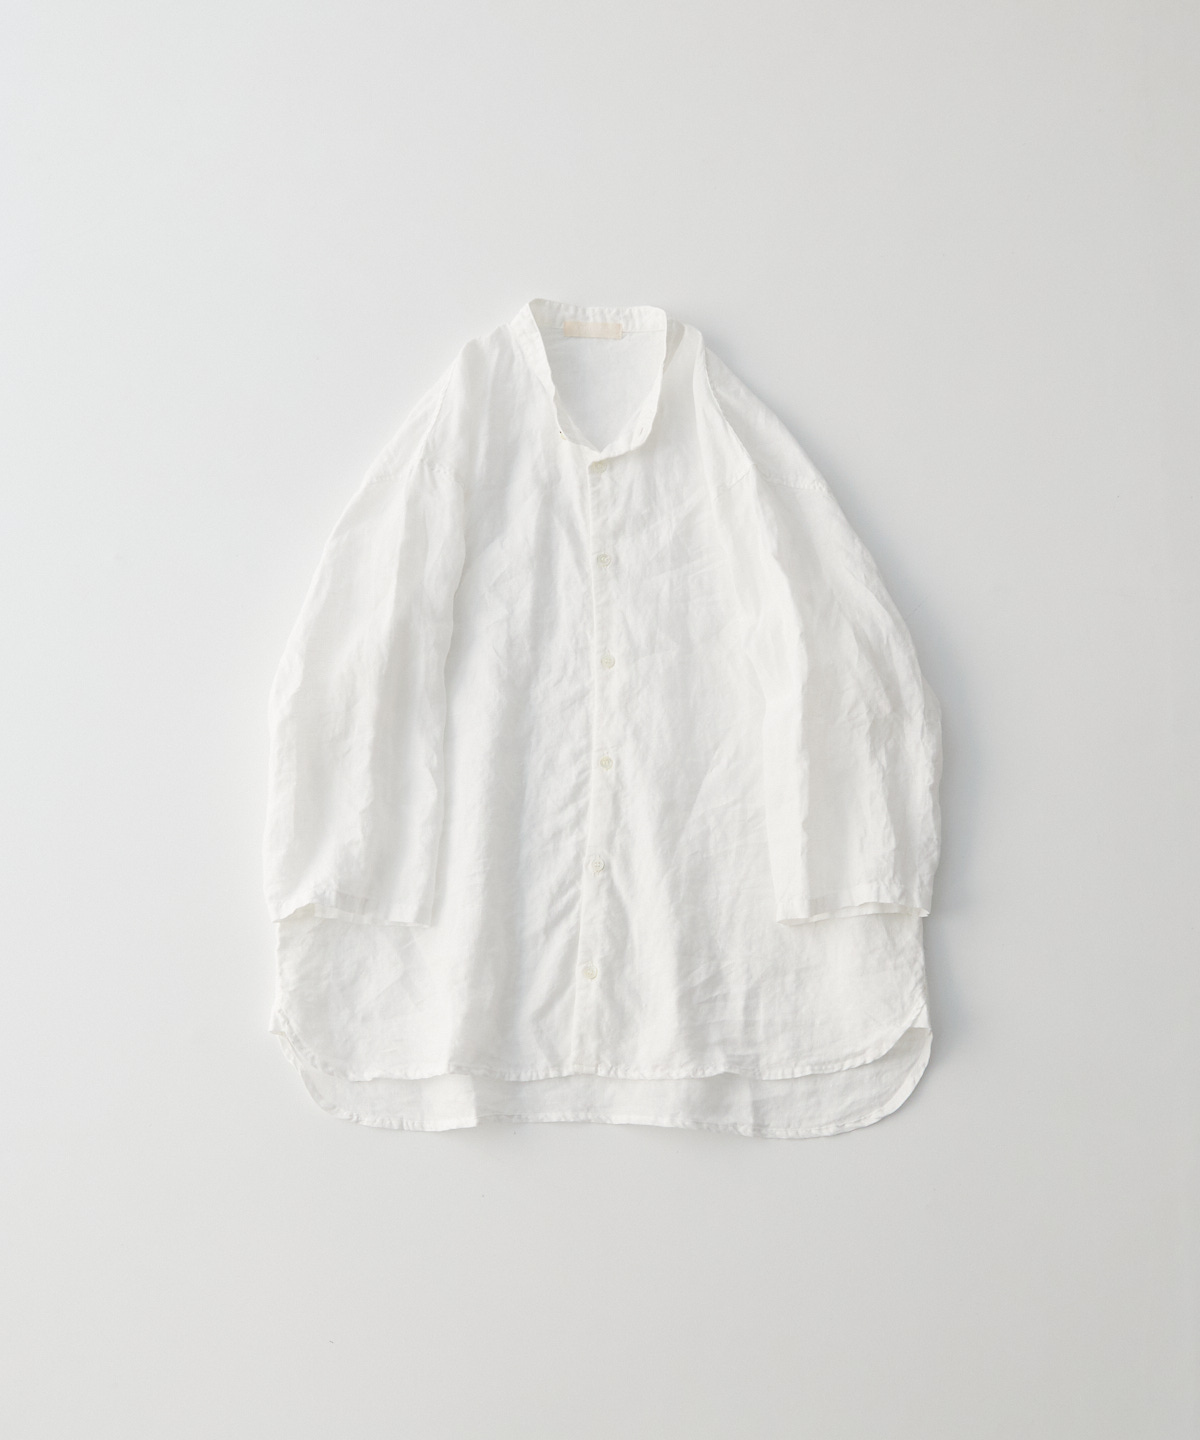 nest robe confect リネンバンドカラー 21SS 超美品購入時の金額¥27500